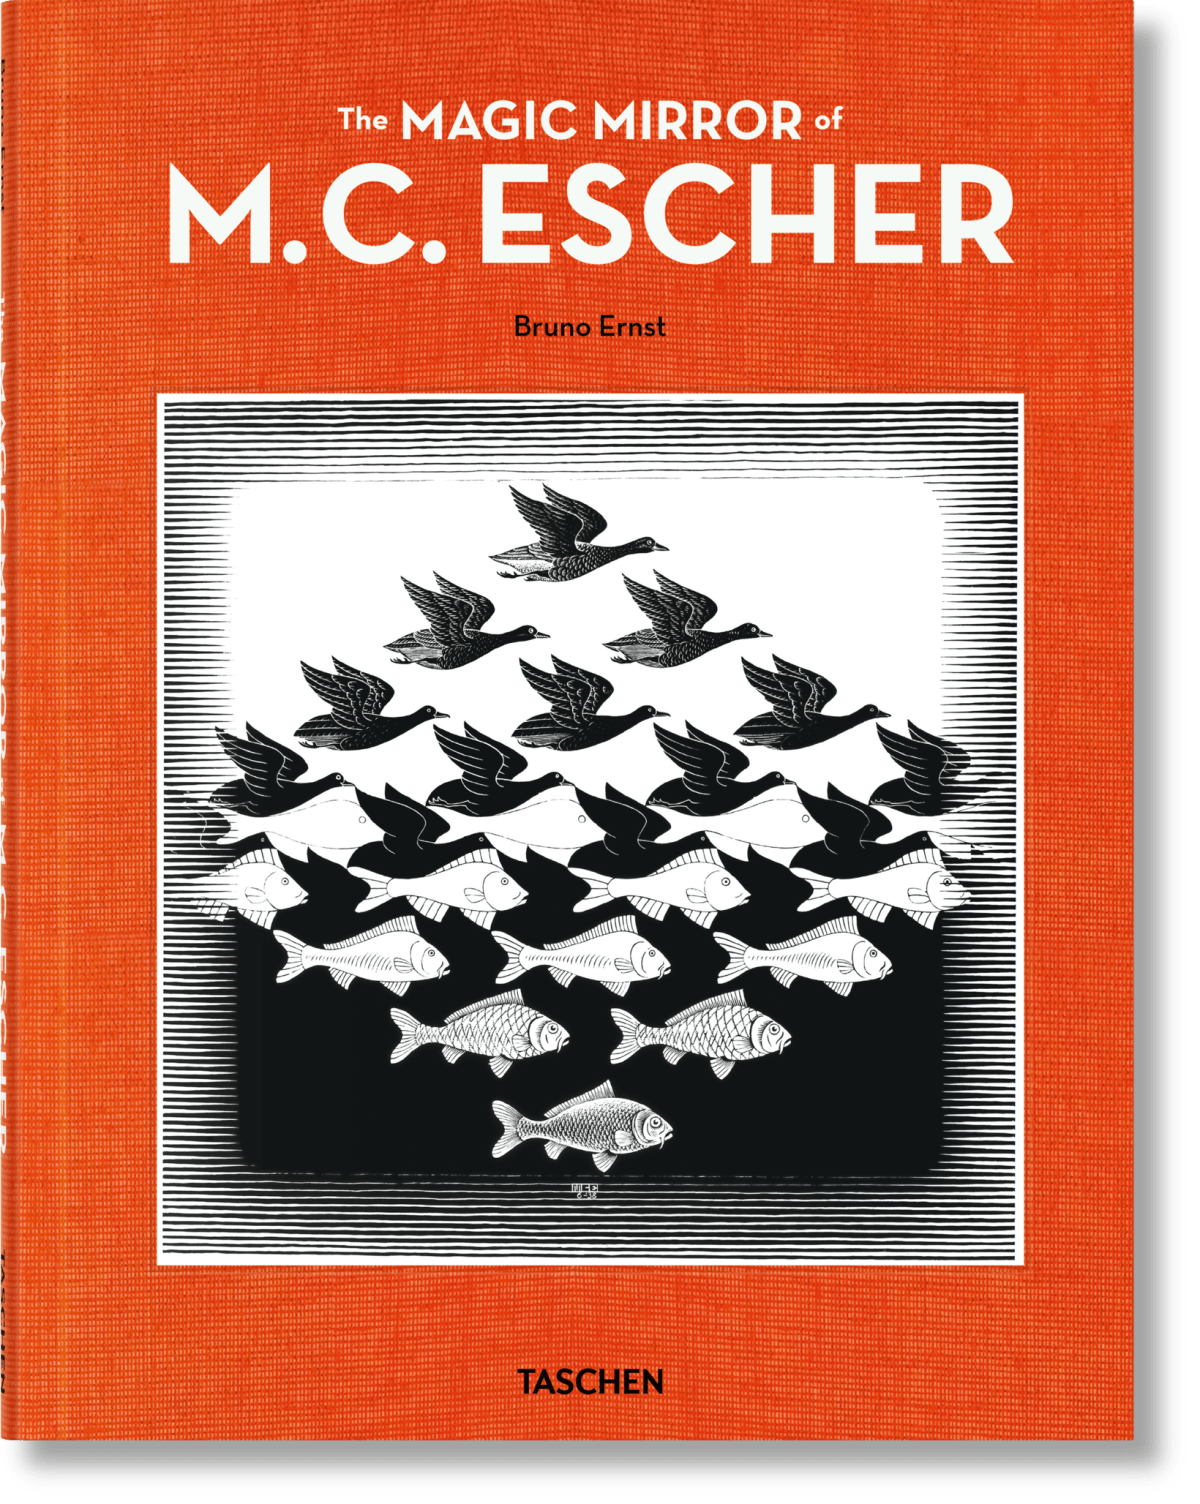 Le Miroir magique de M.C. Escher